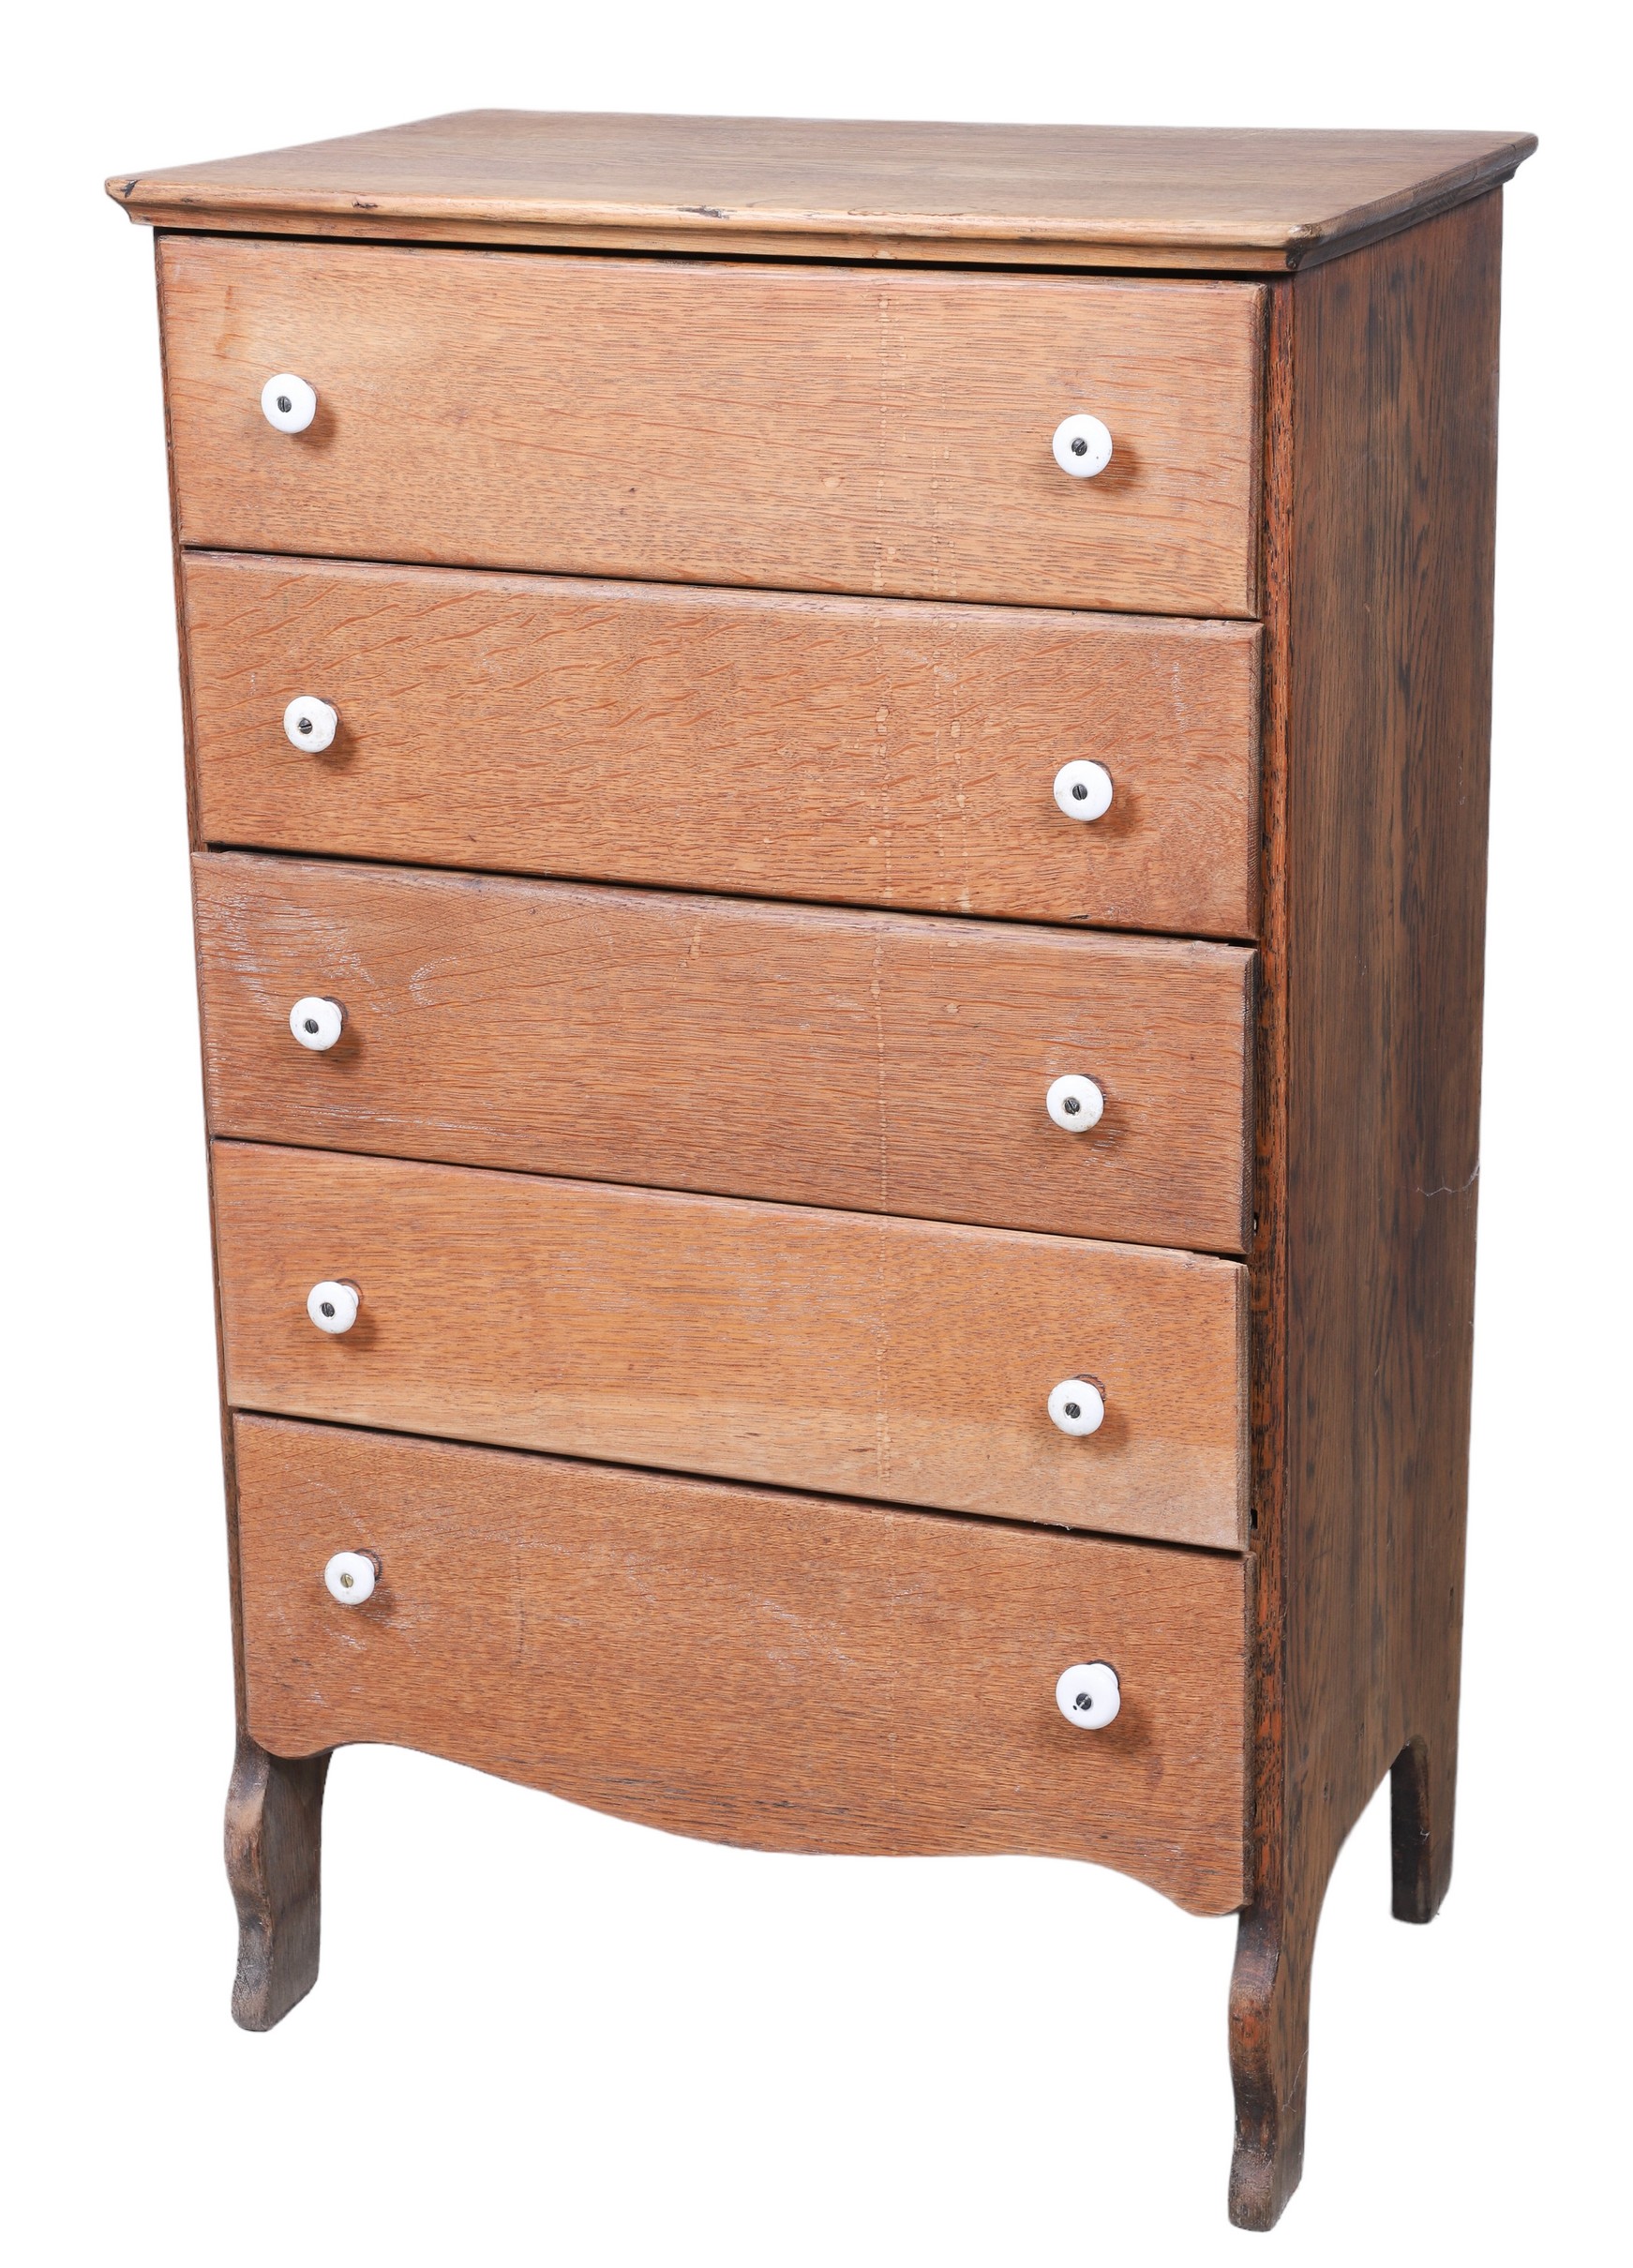 Oak 5 drawer chest, white enameled knobs,